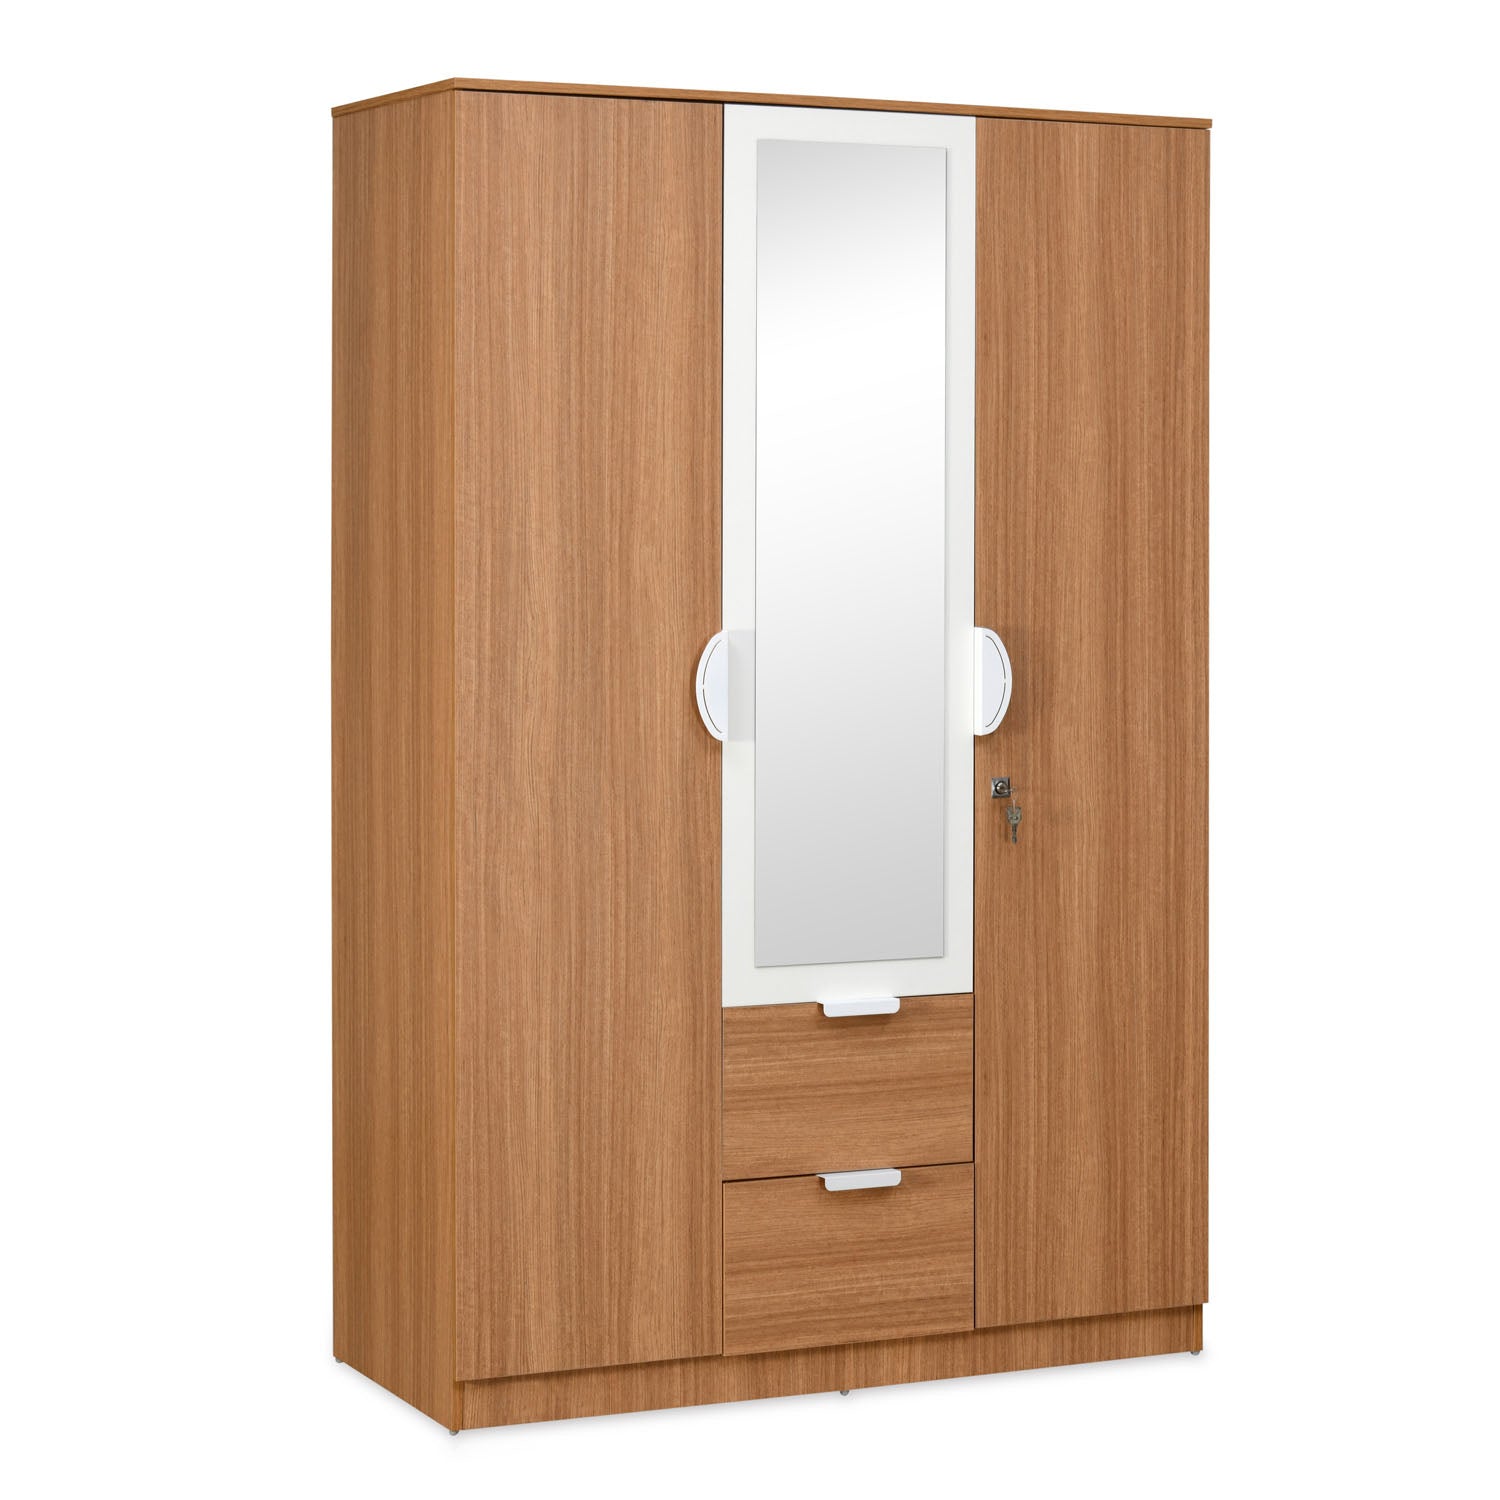 Buy Indio 3 Door Engineered Wood Wardrobe With Mirror & 1 Hanging space ...